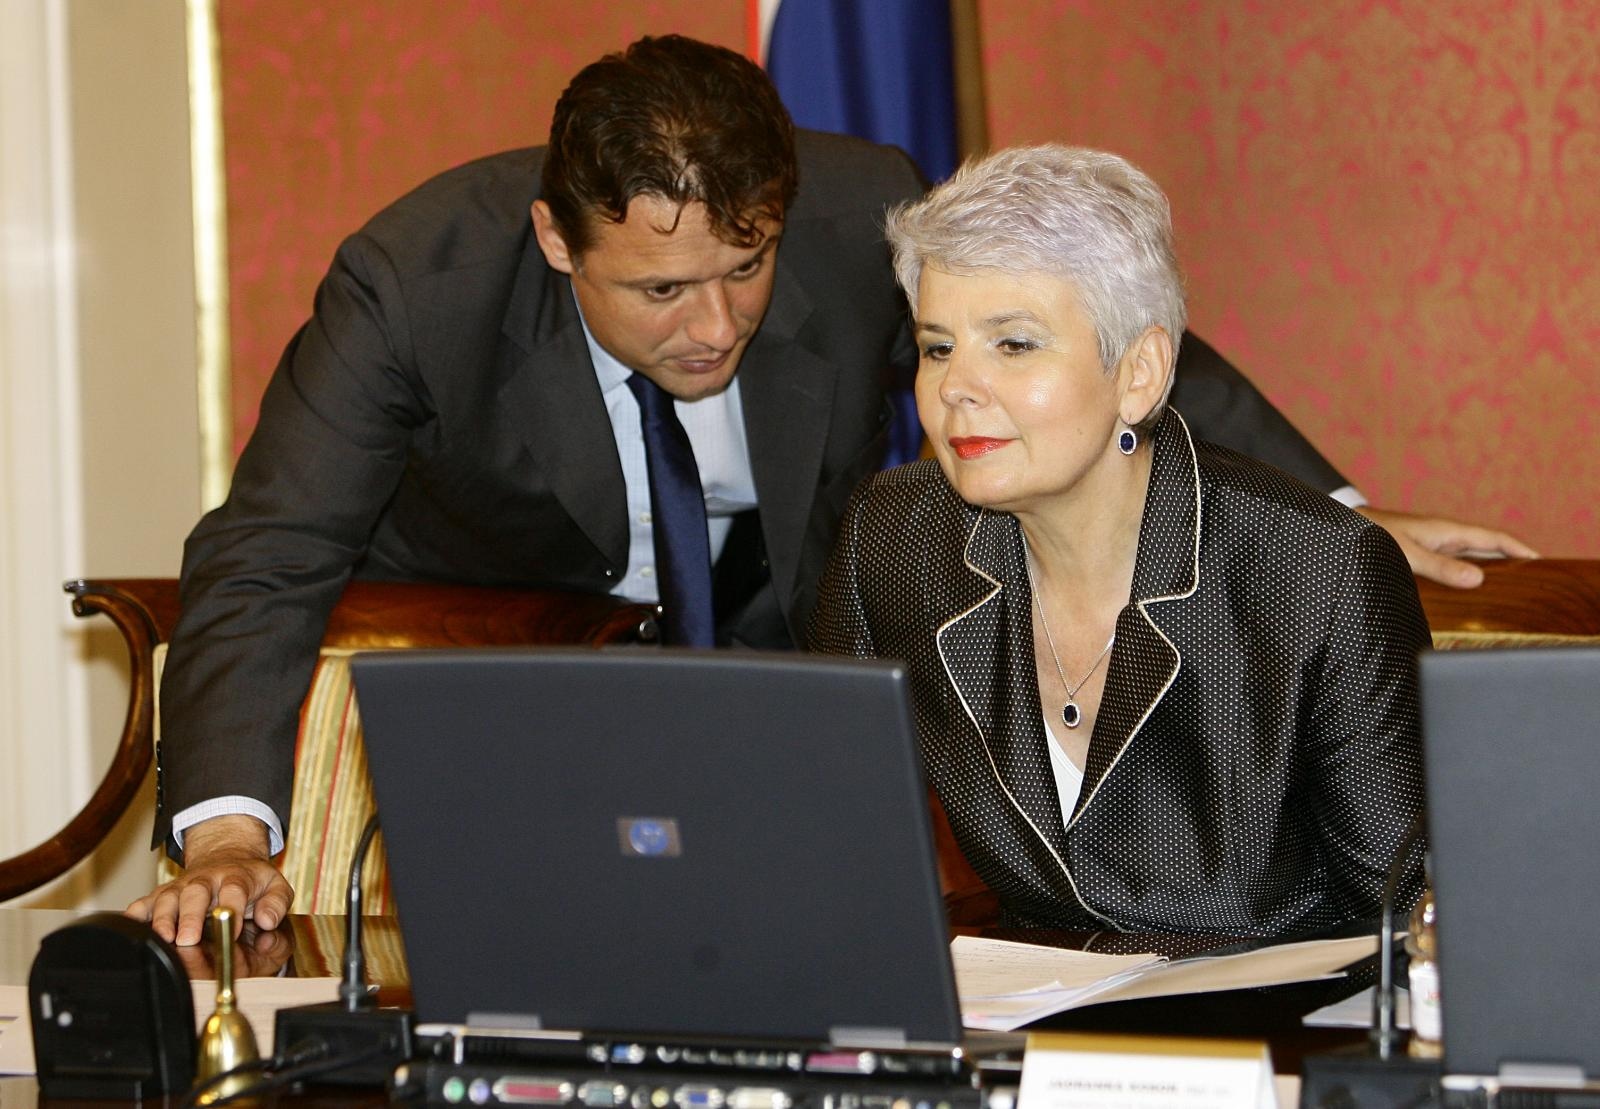 Godina 2009.; isto mjesto, samo godina kasnije i nova premijerka. Jandroković sada šapće na uho Jadranki Kosor